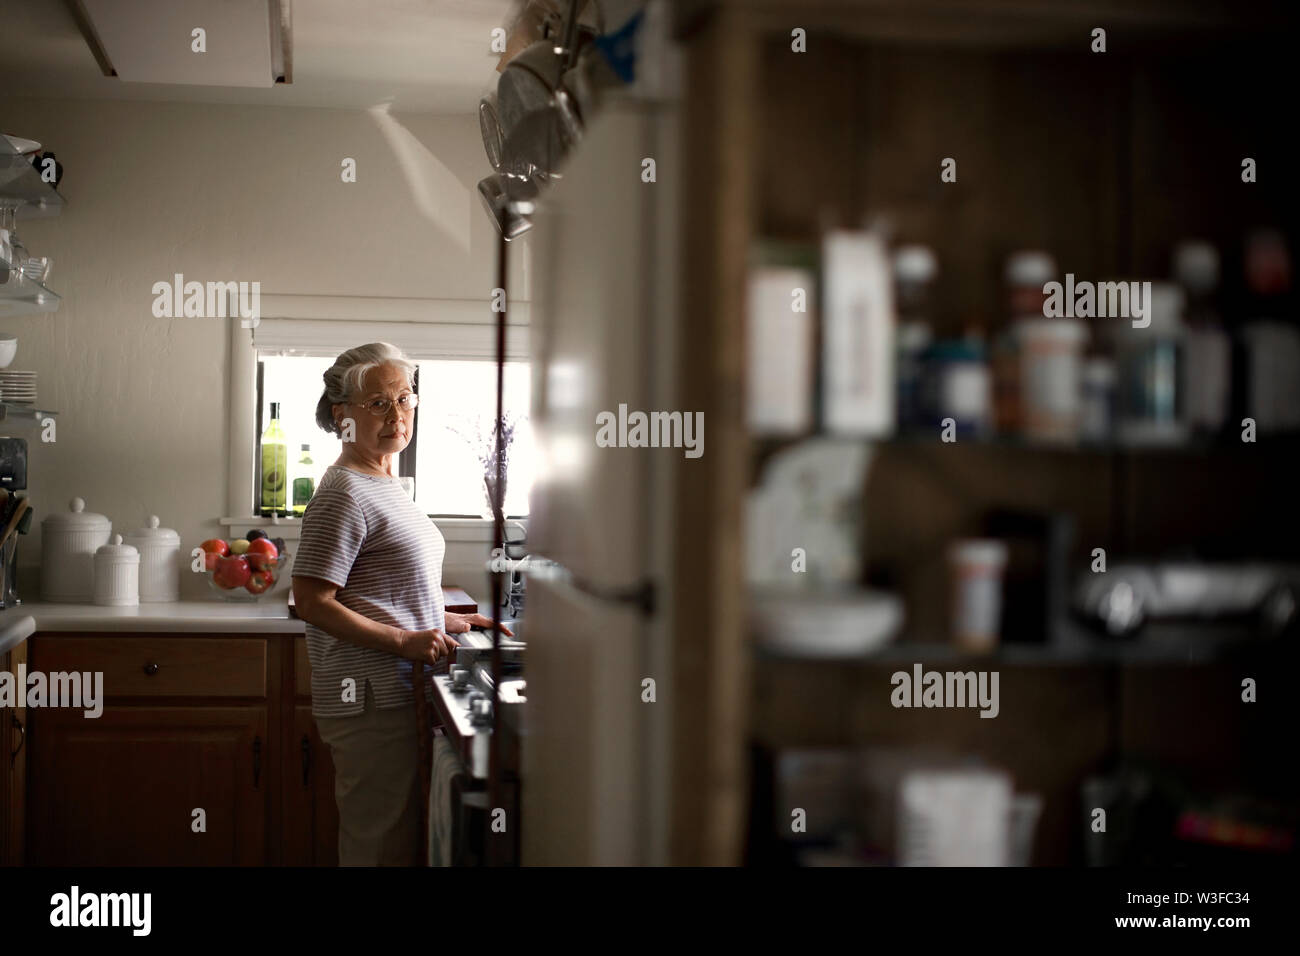 Hauts femme debout dans sa cuisine avec un air sérieux. Banque D'Images